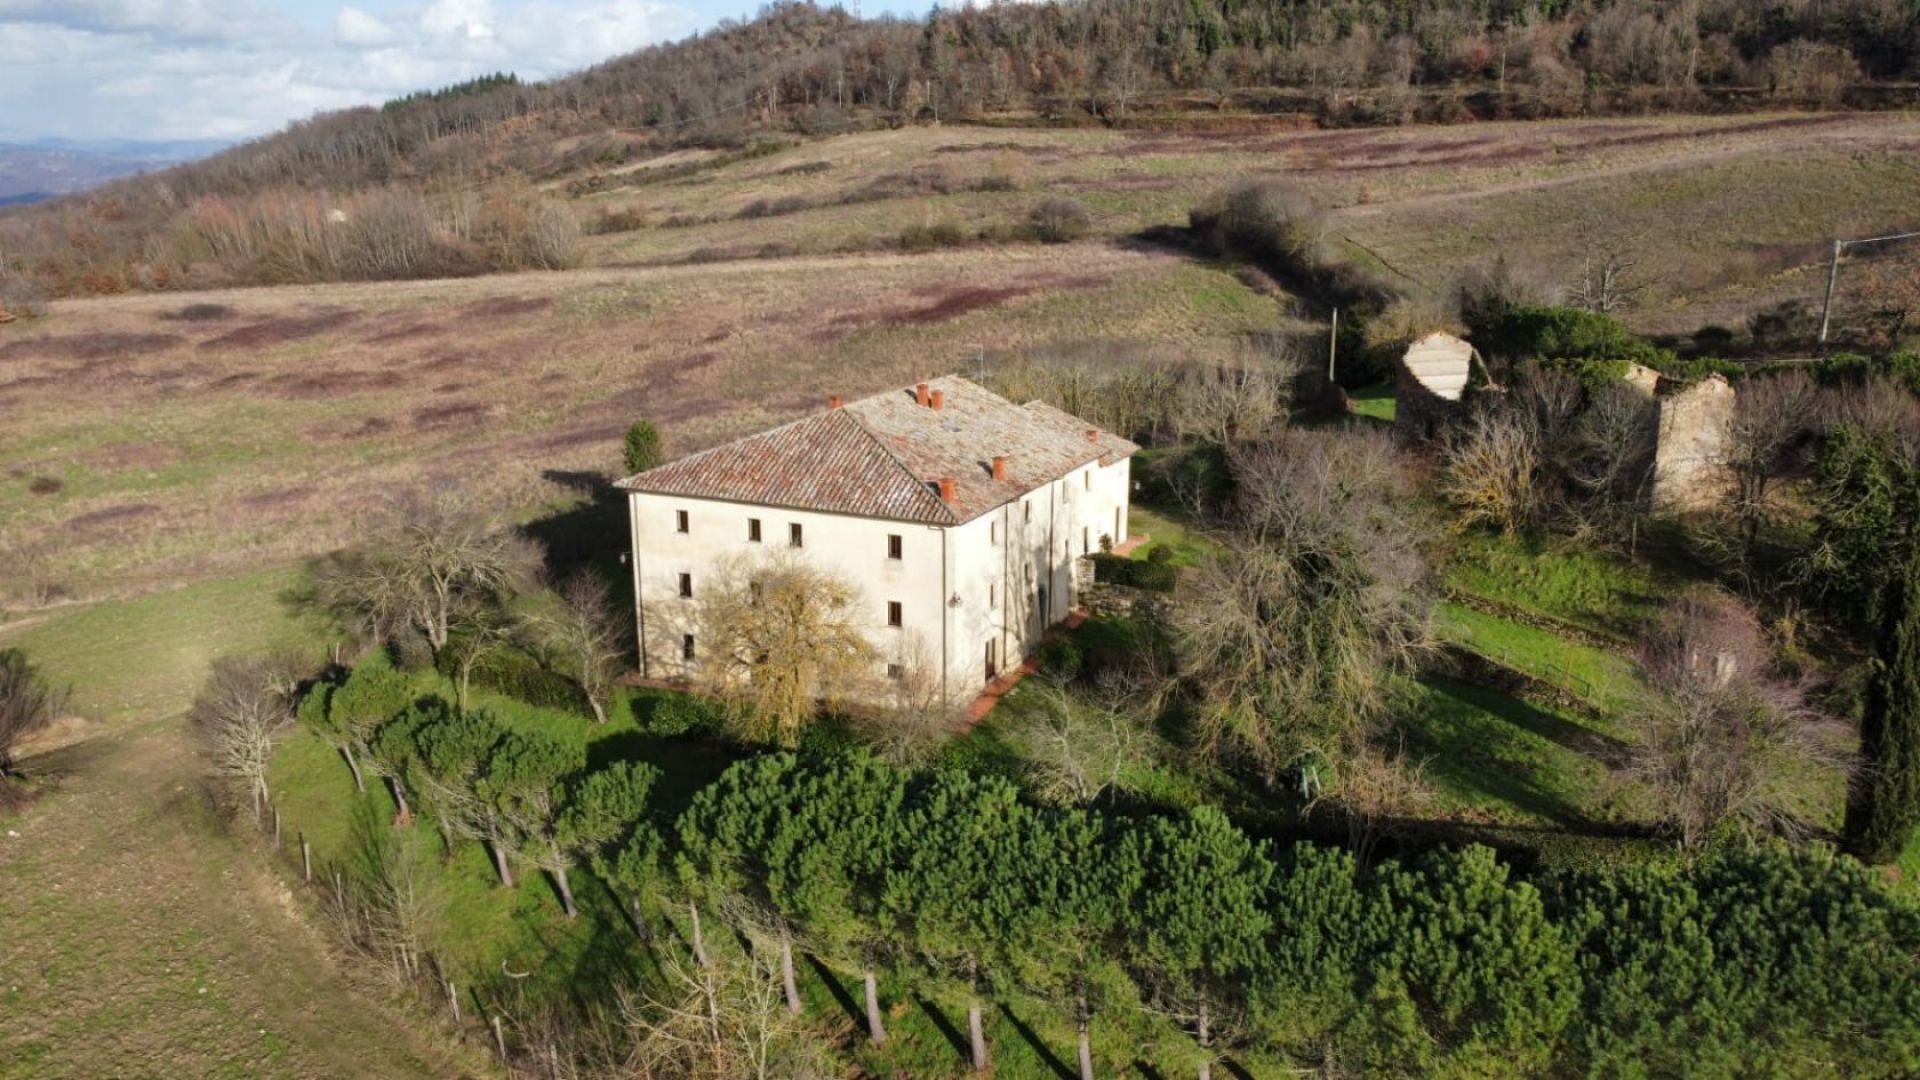 For sale cottage in  Umbertide Umbria